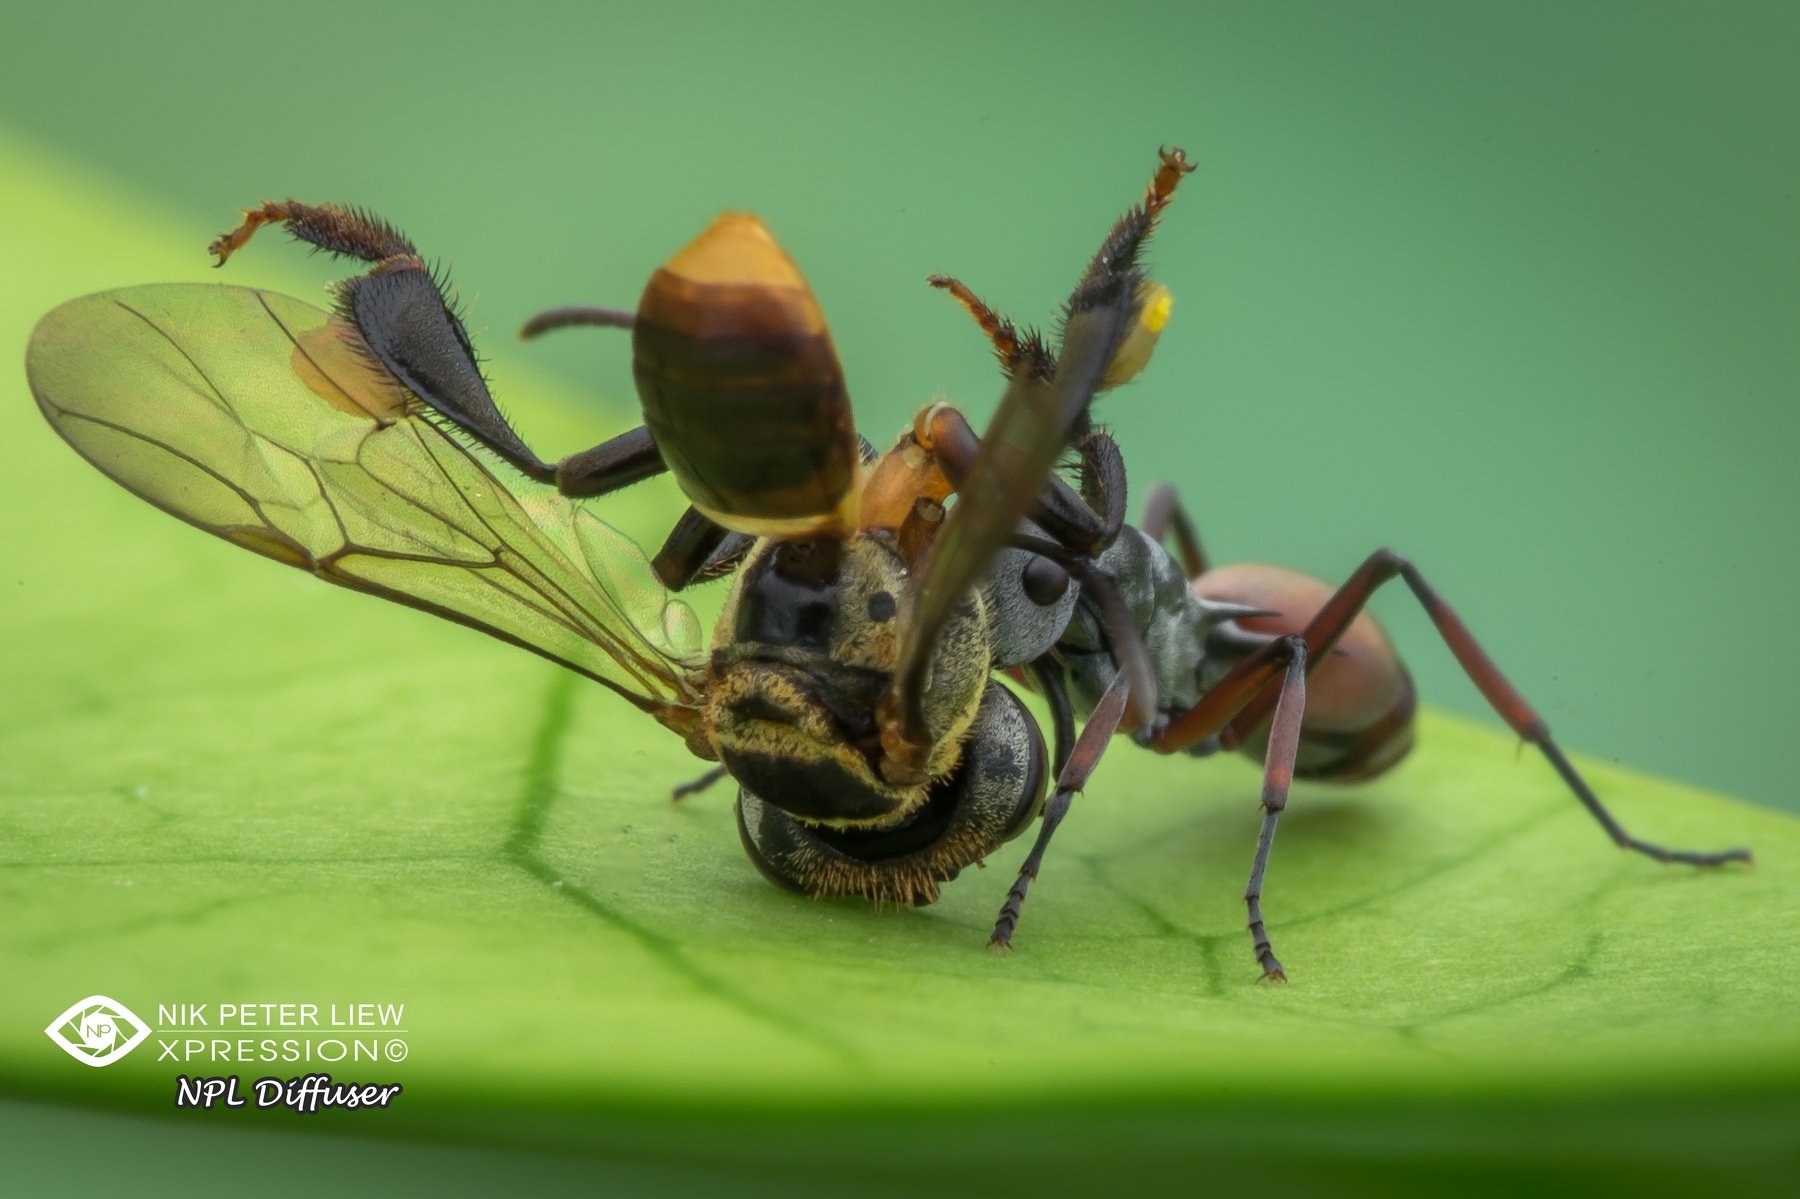 #macro, #ant, #bee, #nature, #prey&predator, #npl, Nik Peter Liew